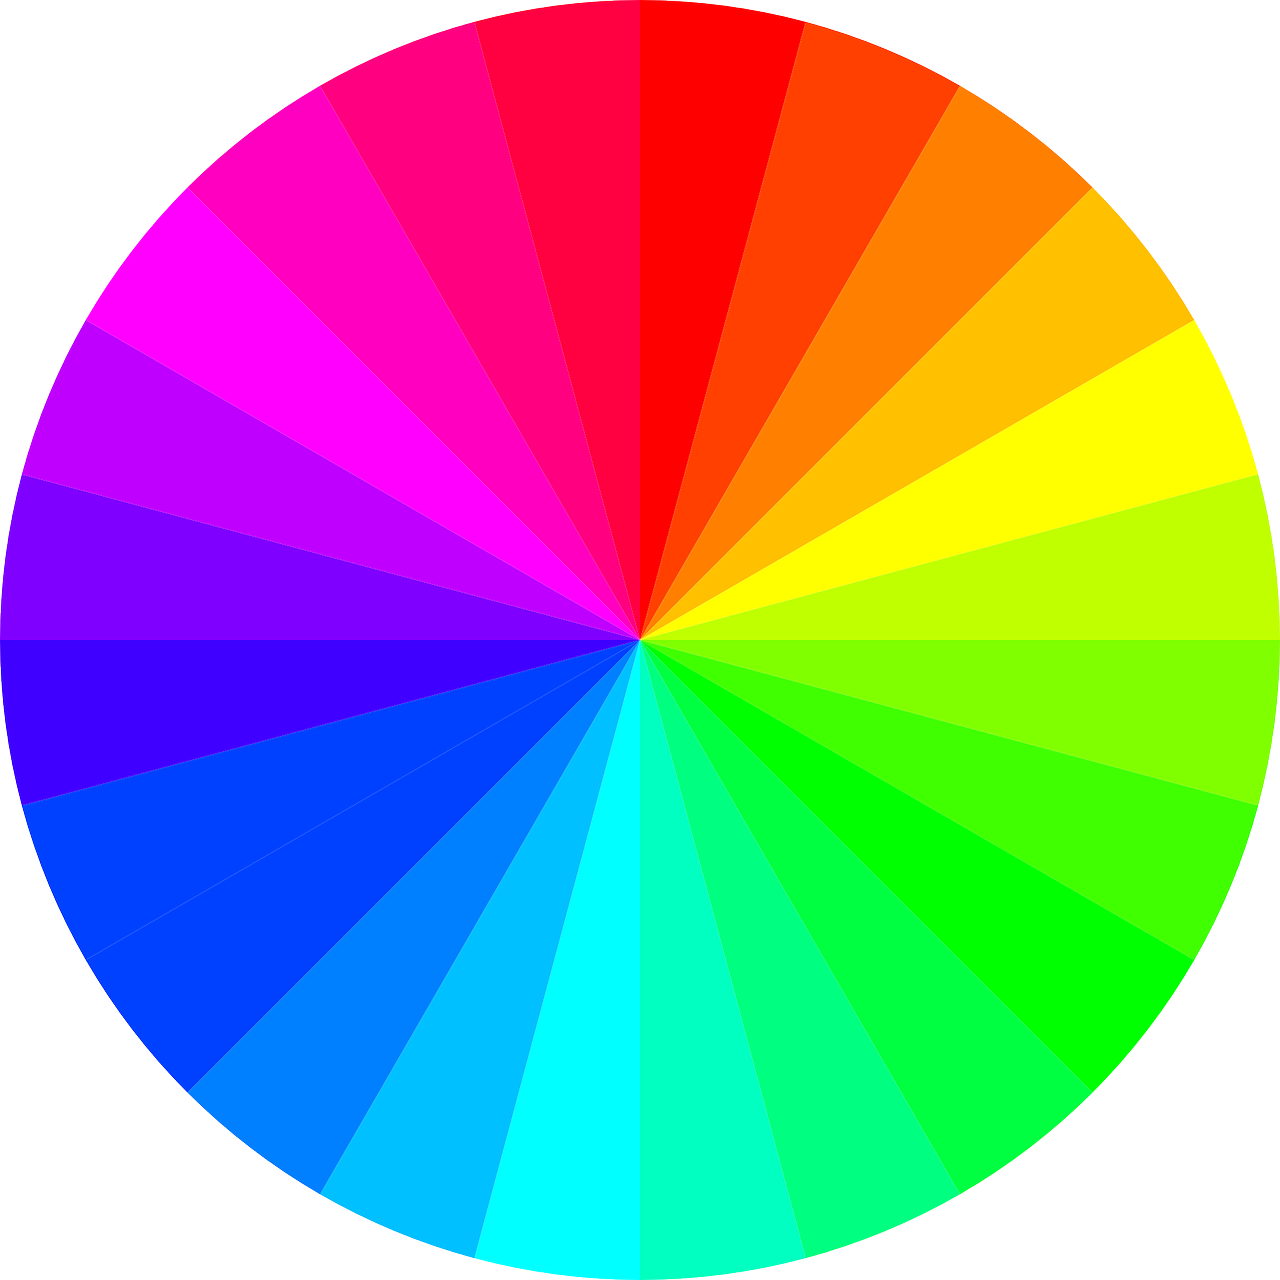  عکس دایره هفت رنگ رنگین کمان